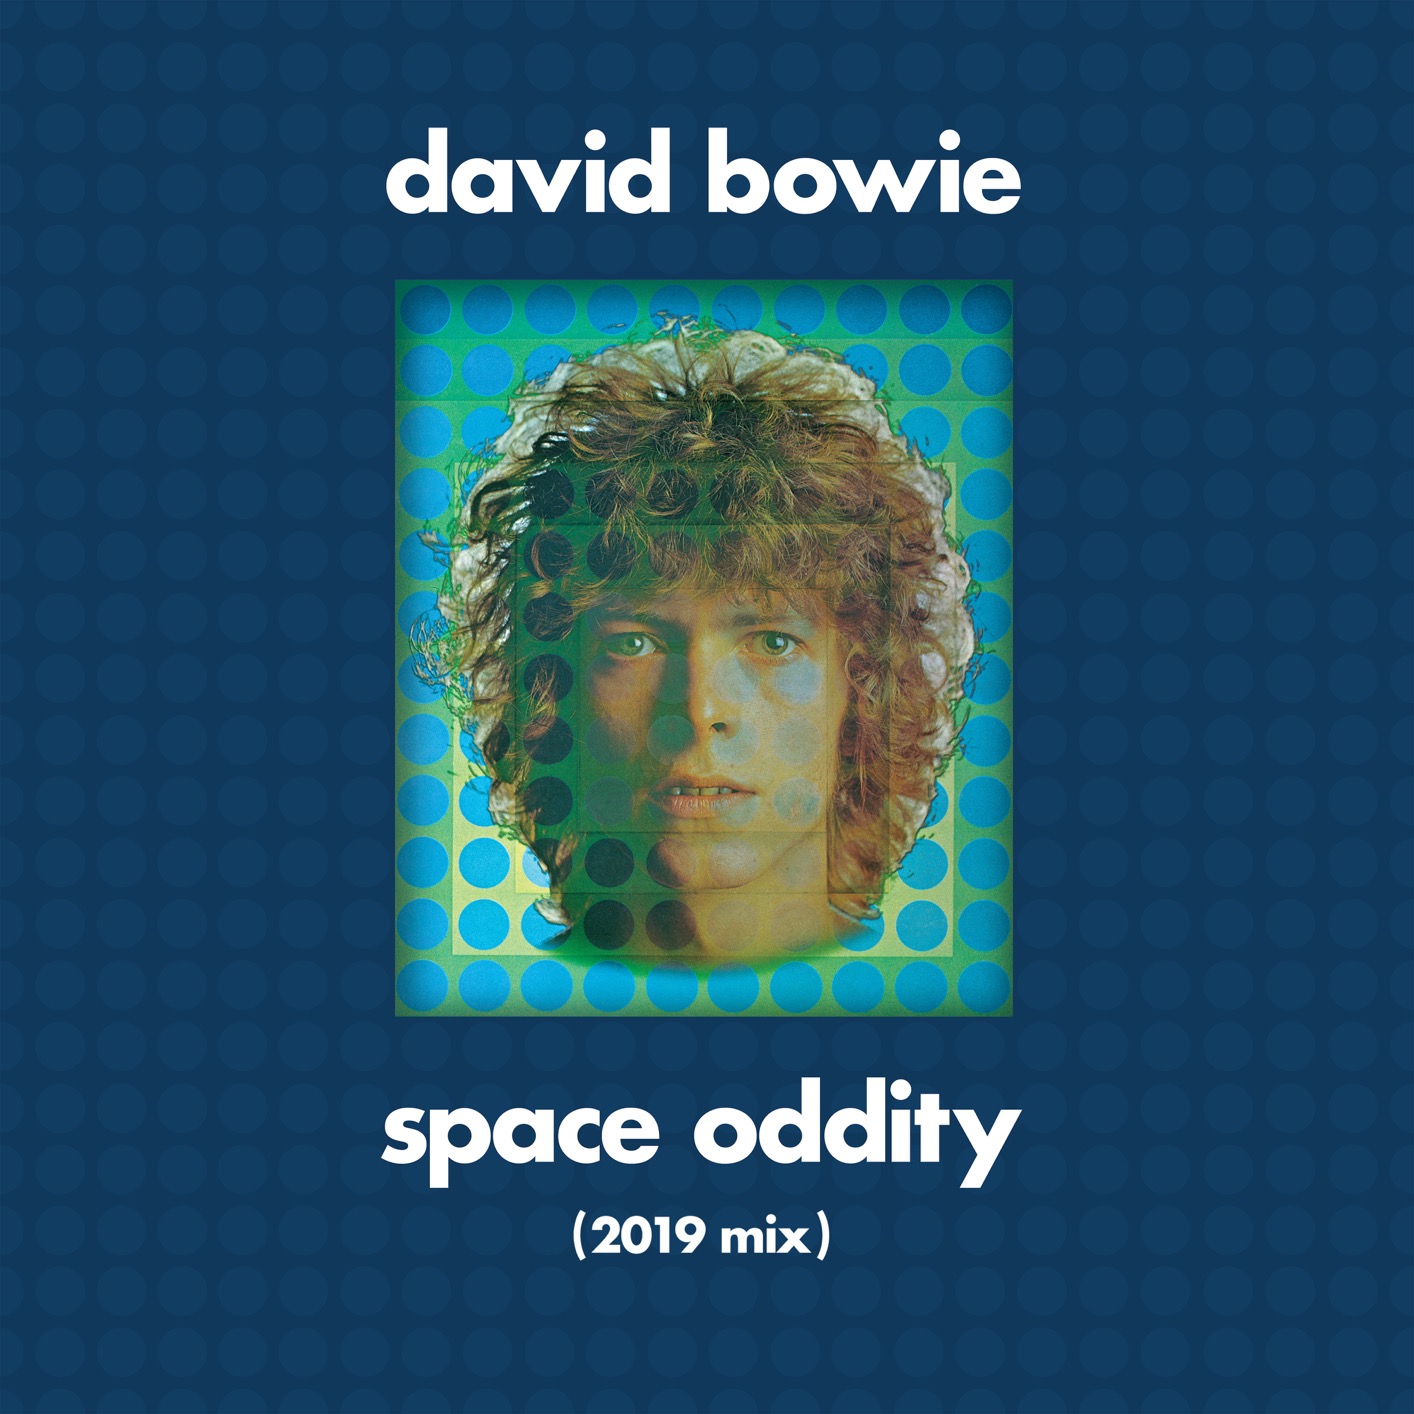 David Bowie – Space Oddity (Tony Visconti 2019 Mix) (1969/2019) [FLAC 24bit/96kHz]